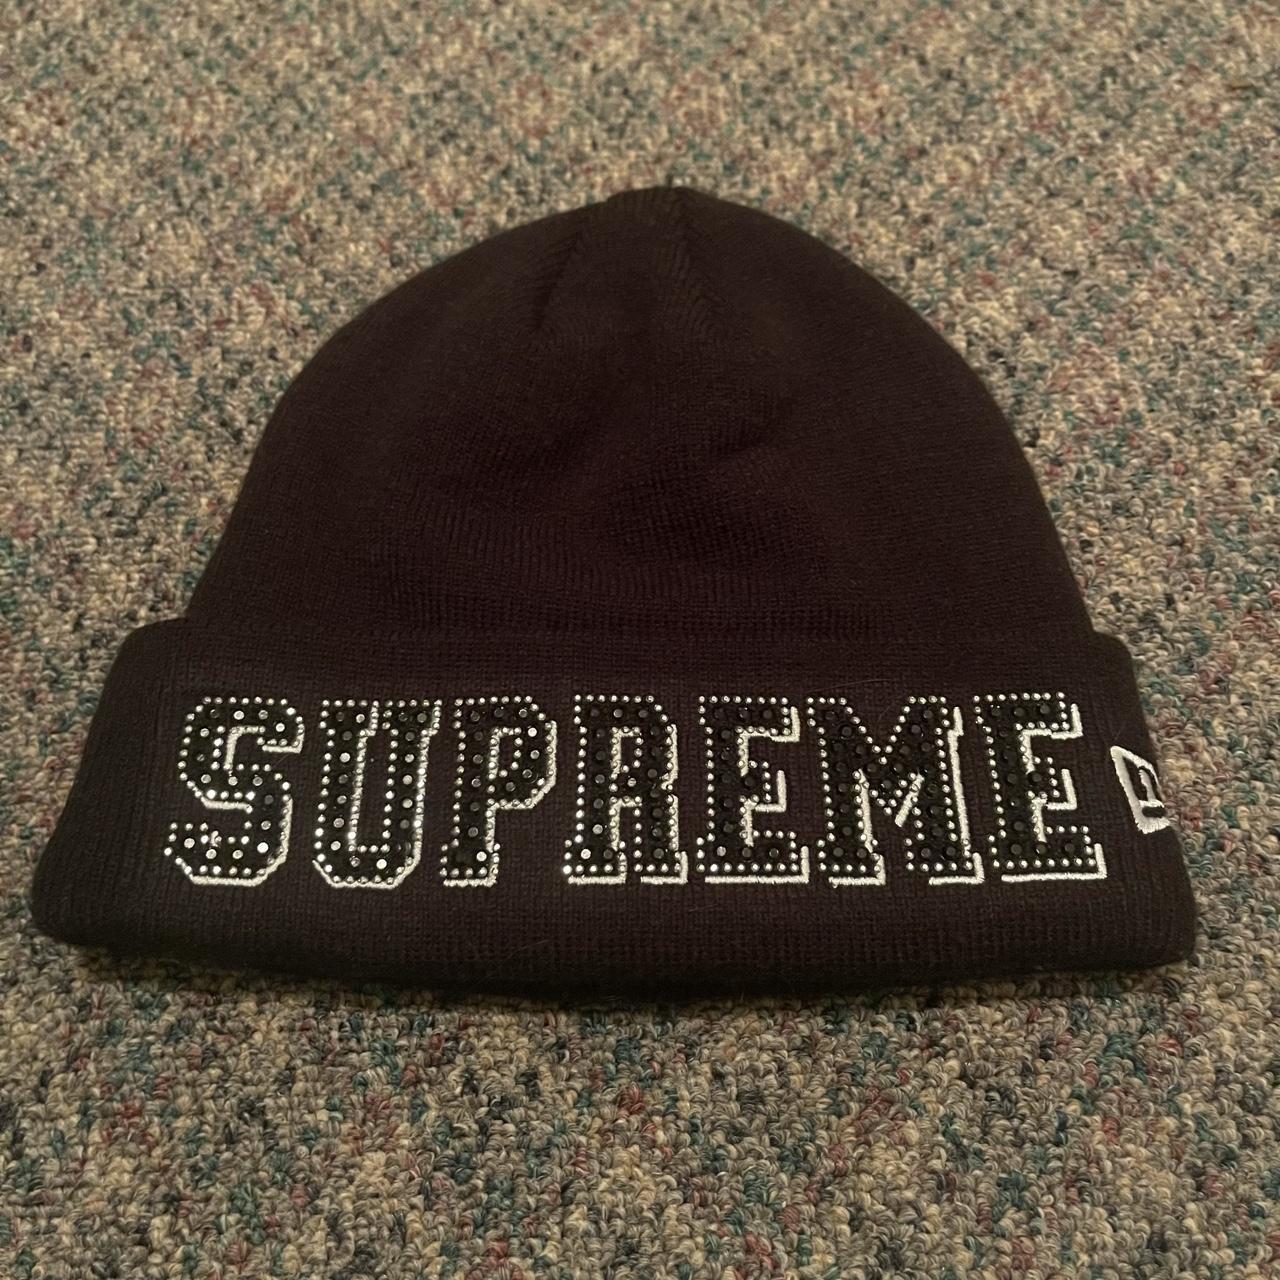 Supreme Supreme hat - Gem